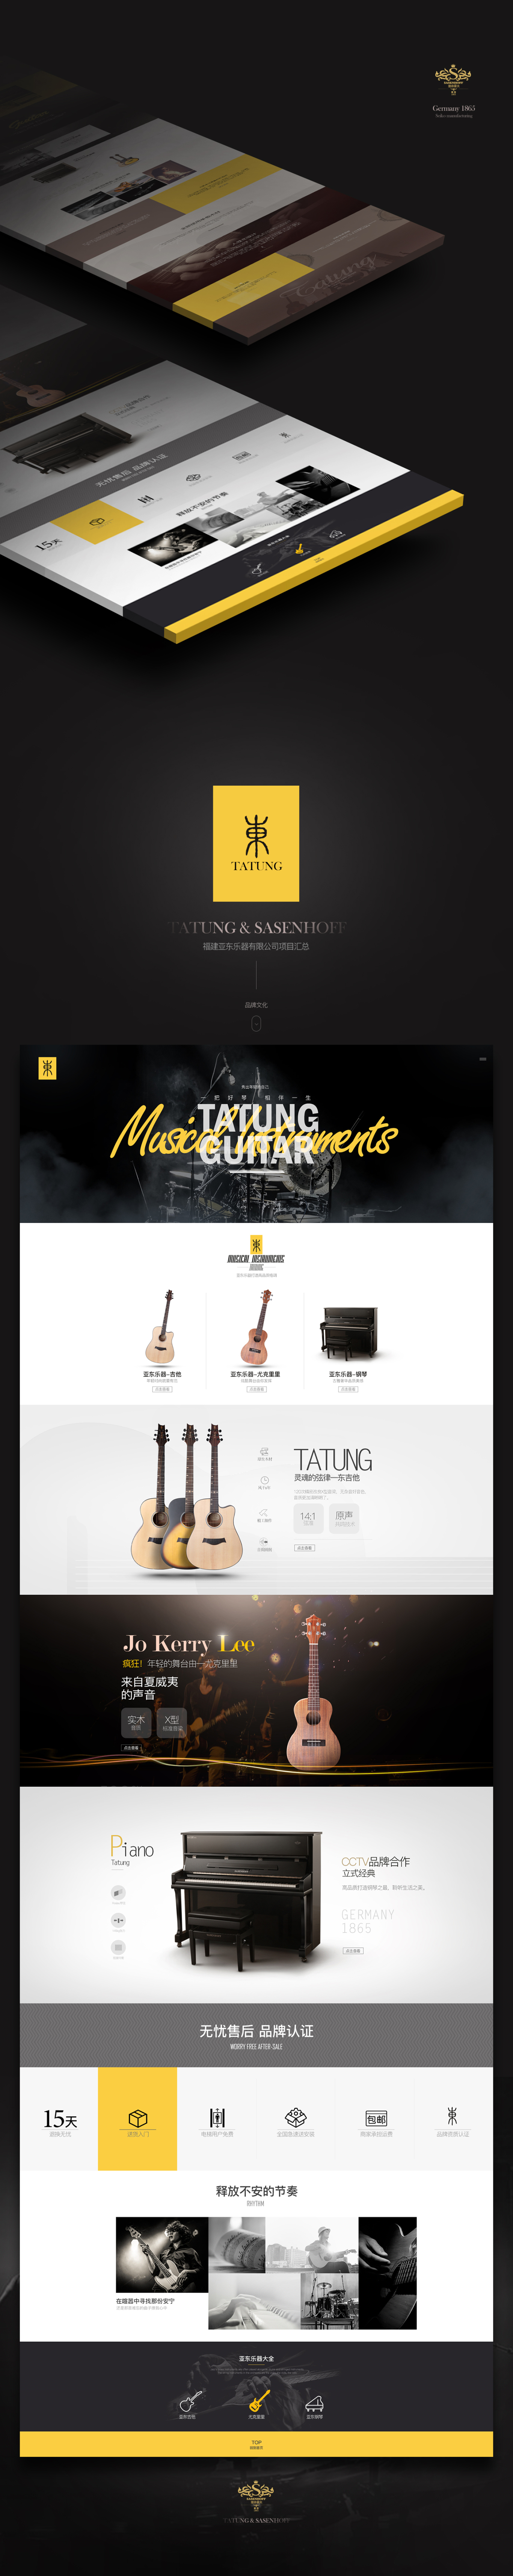 Sasenhoff鋼琴&Tatung亞東樂器有限公司項目匯總圖2